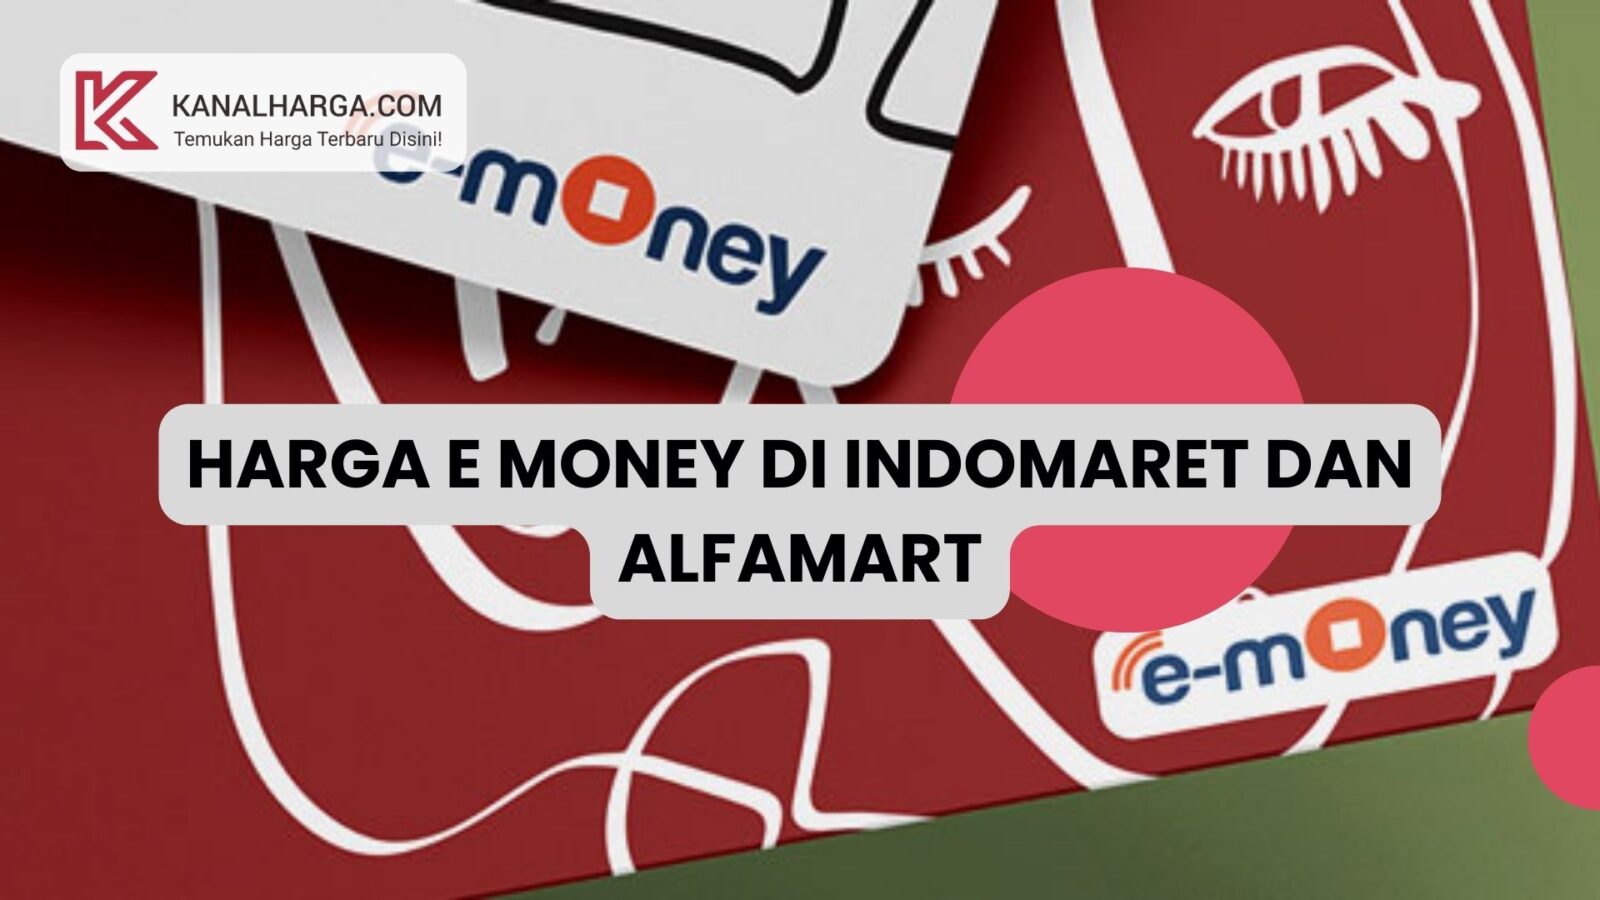 Harga E Money di Indomaret dan Alfamart Harga E Money di Indomaret dan Alfamart